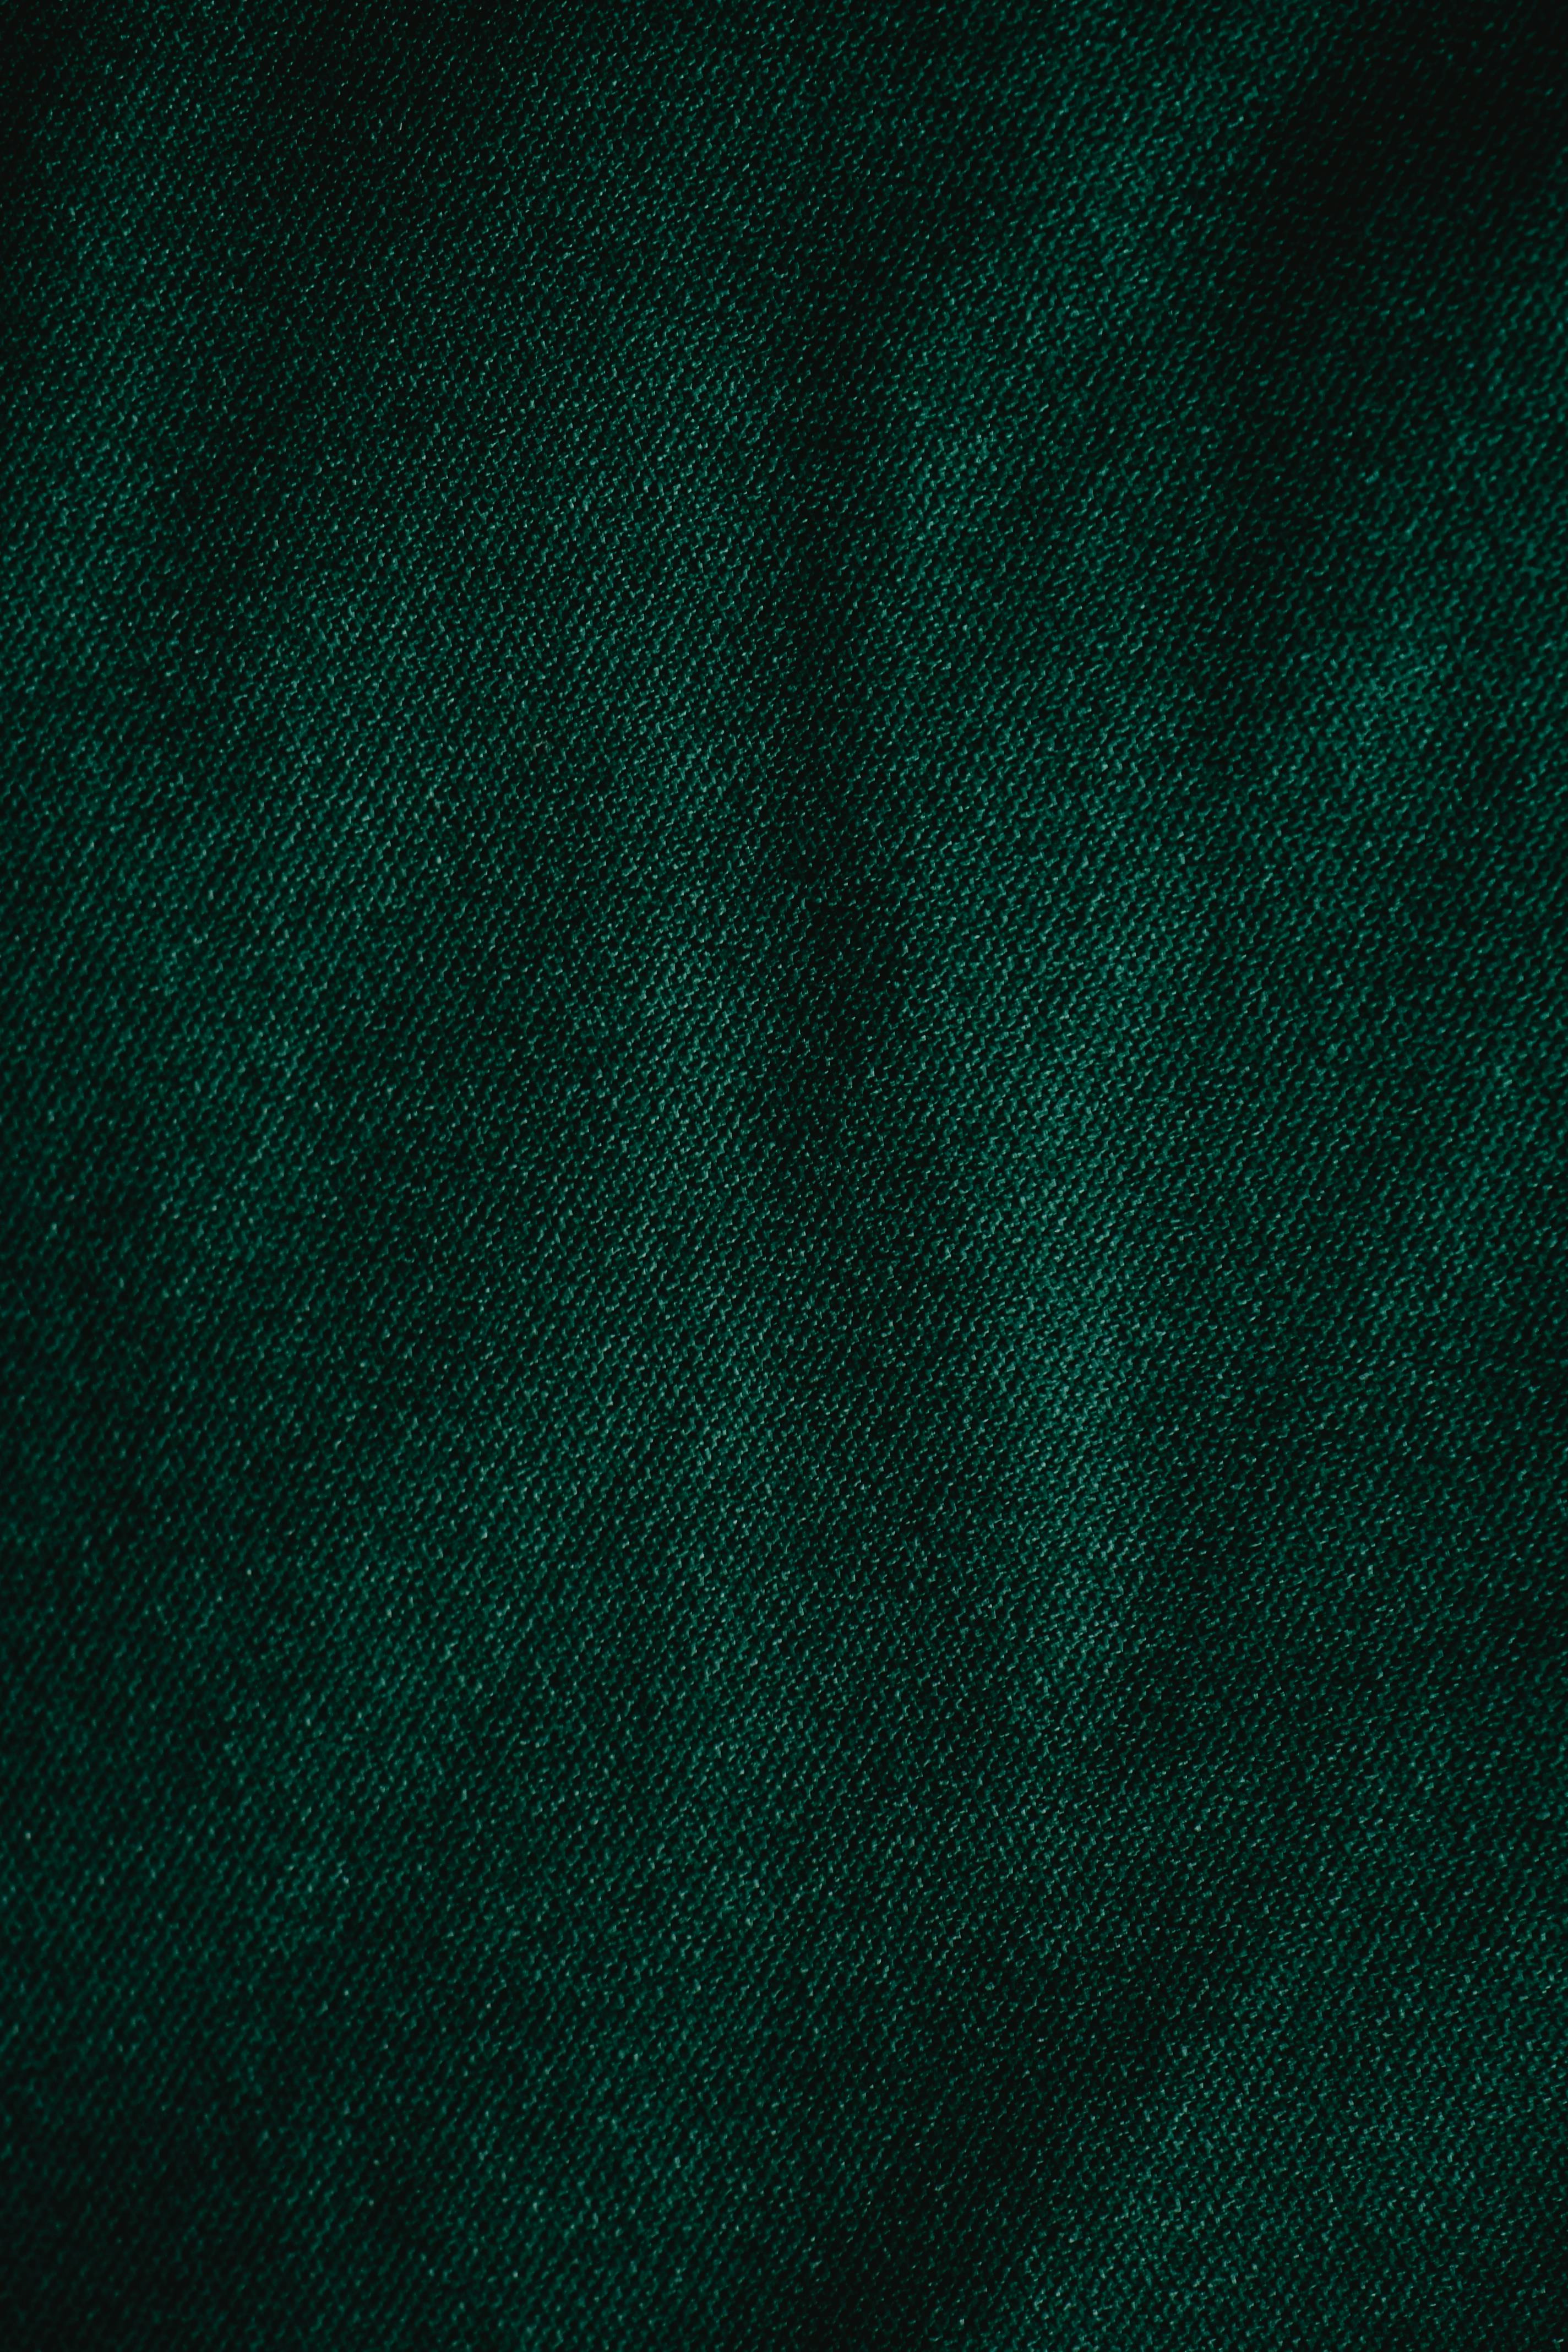 Khám phá tất cả các chi tiết của tấm vải xanh gần cận này để hiểu rõ hơn về chất liệu và sự sang trọng, đẳng cấp của nó. Màu sắc xanh lá cây sáng rực sẽ làm nổi bật bất kỳ dự án may mặc nào của bạn. Hãy xem hình ảnh liên quan để cảm nhận và khám phá thật nhiều chi tiết của tấm vải này nào.